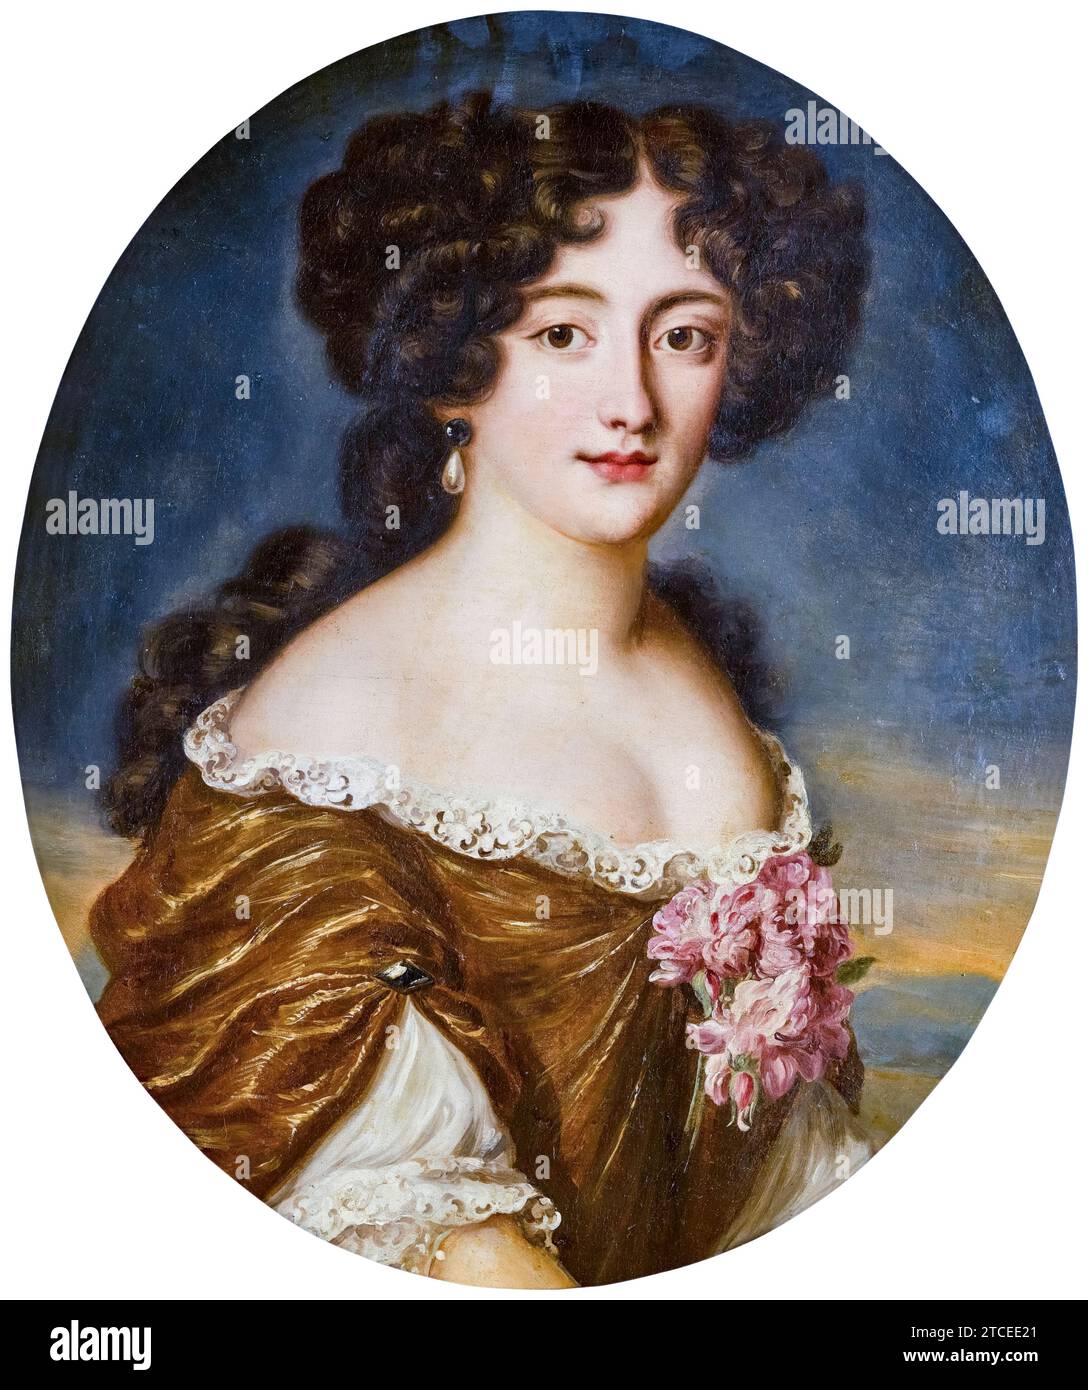 Hortense Mancini, duchesse de Mazarin (1646-1699), portrait à l'huile sur toile de Jacob Ferdinand Voet, avant 1689 Banque D'Images